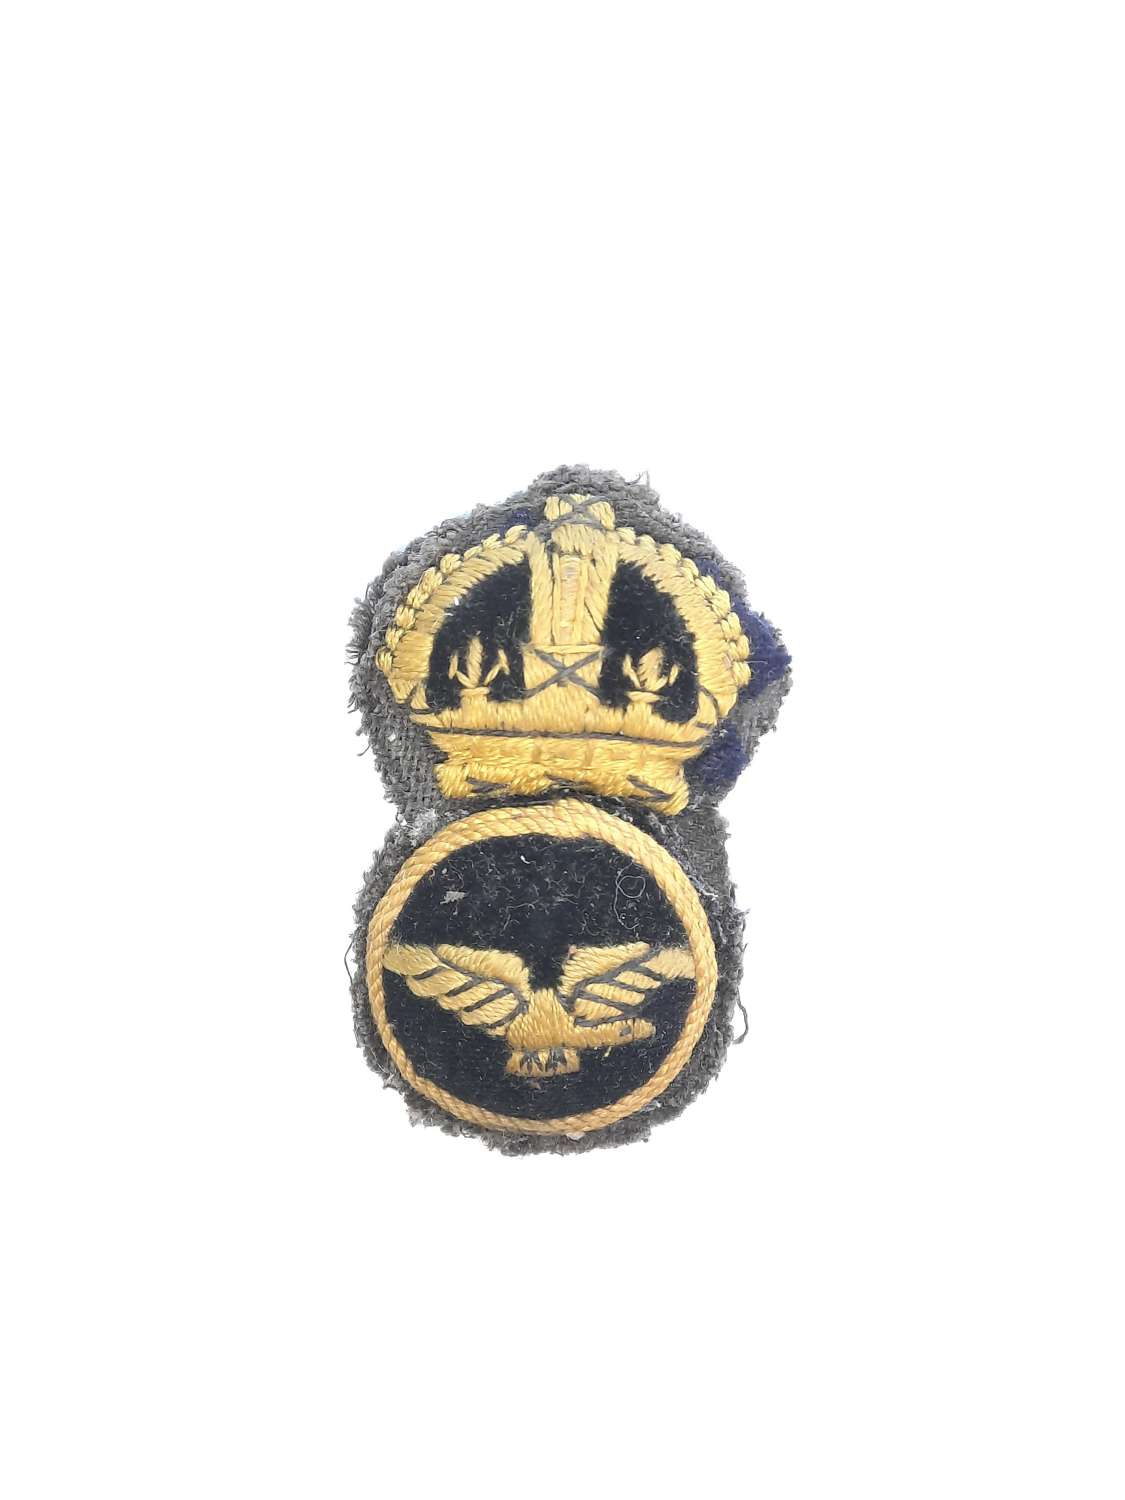 1918 RAF NCO Cap Badge